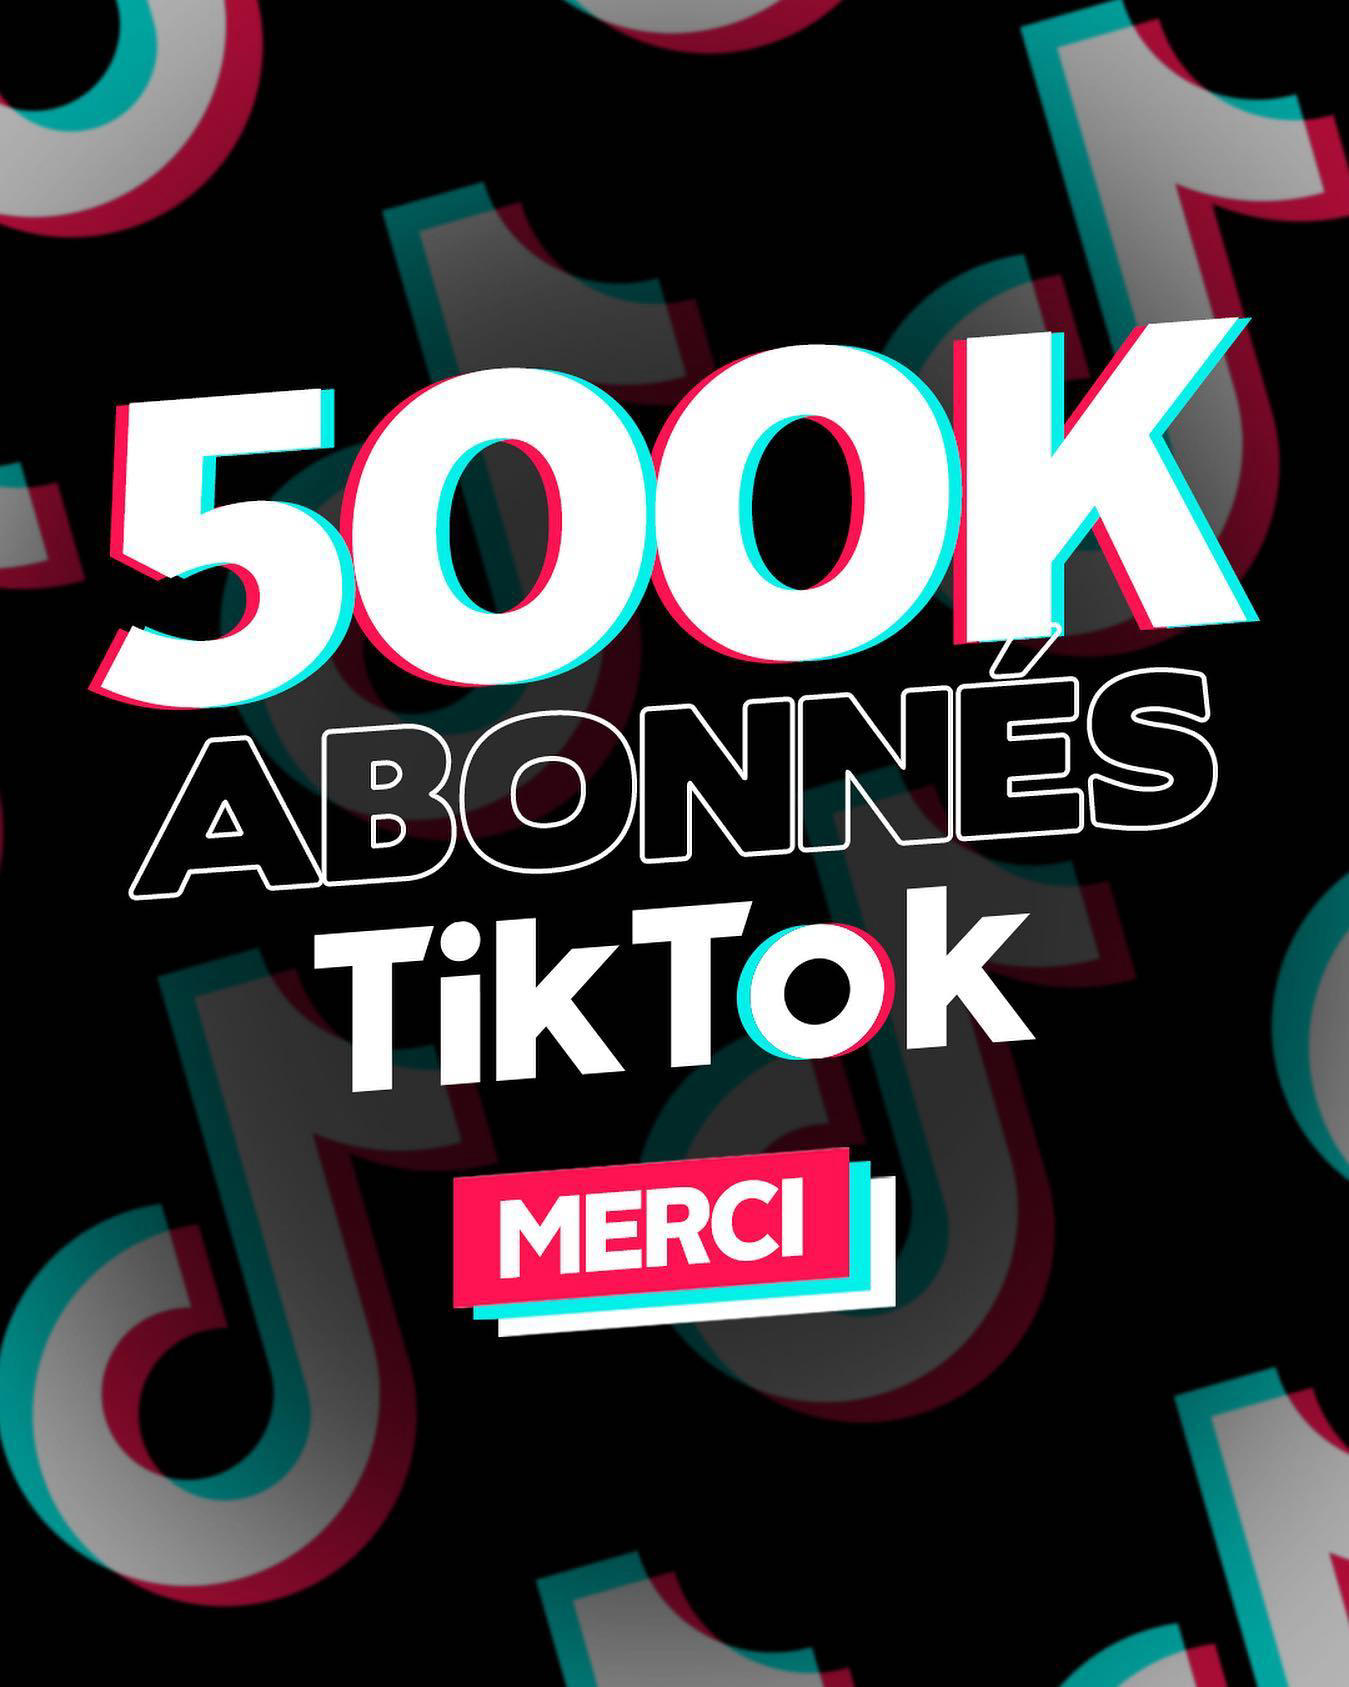 Booska-P - La team, vous êtes plus de 500 000 à nous suivre sur TikTok, merci à vous